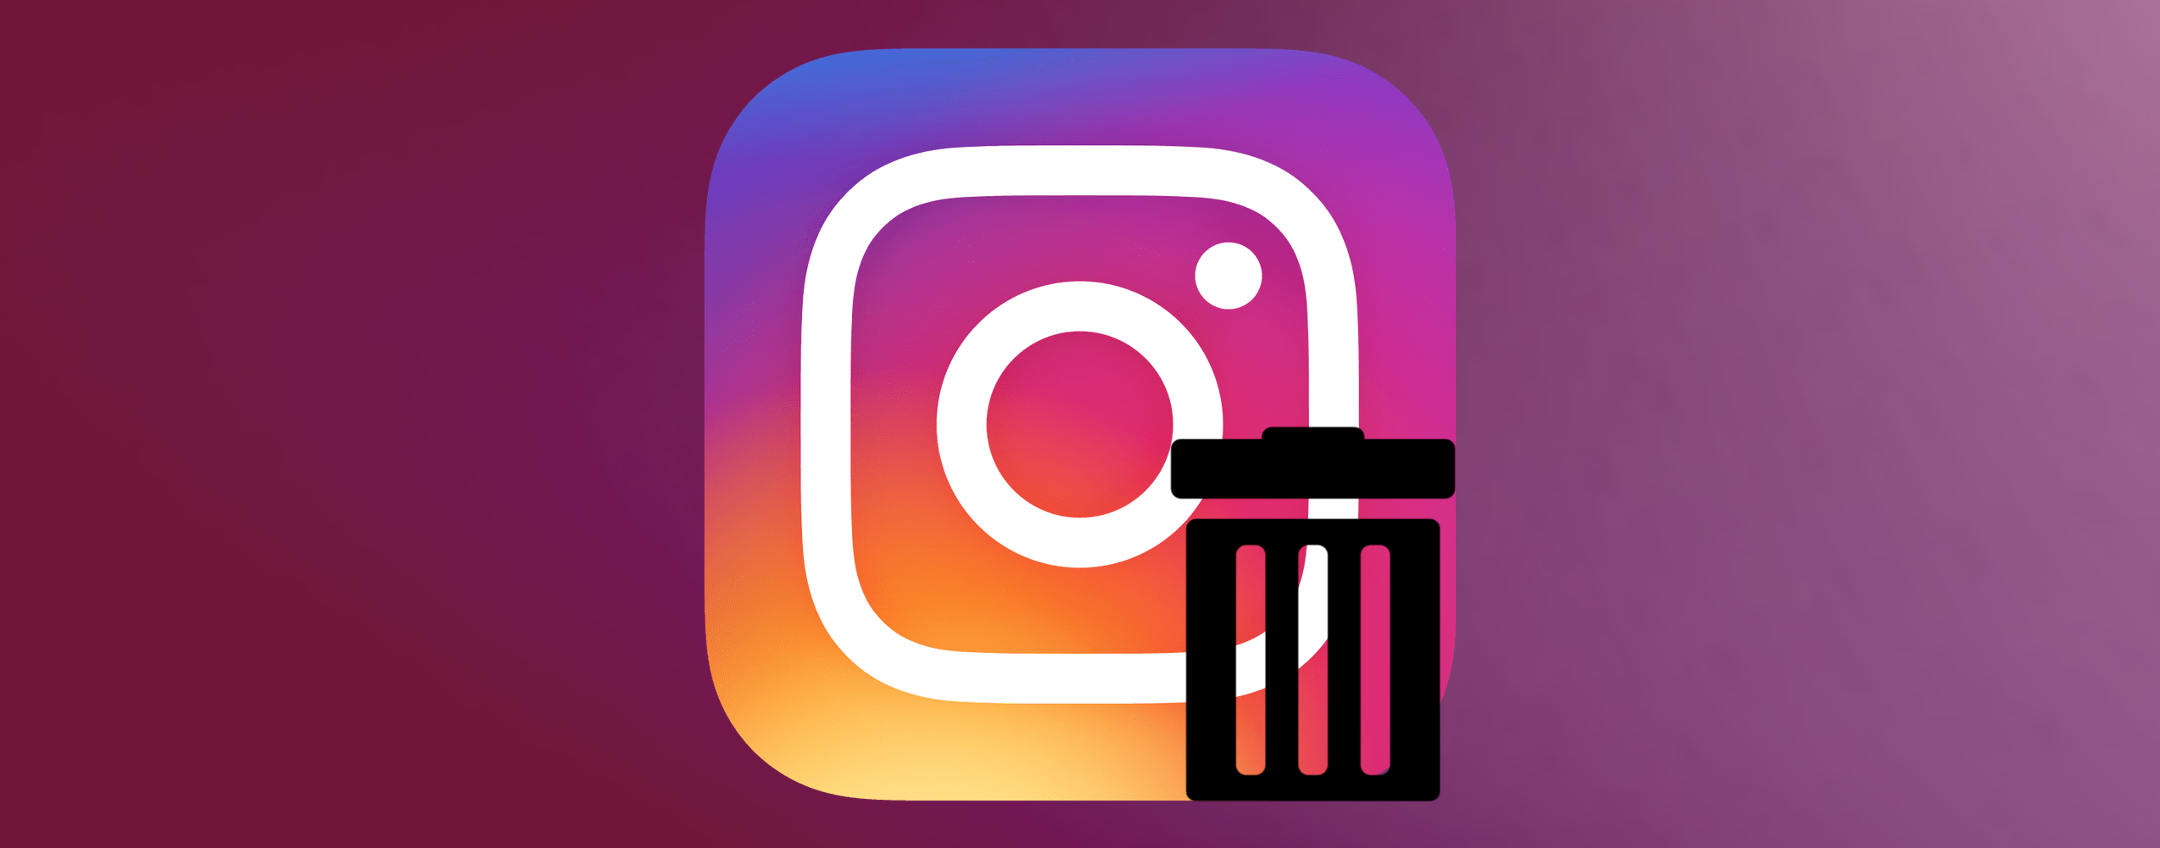 Instagram: post, commenti e like potranno essere eliminati in gruppo